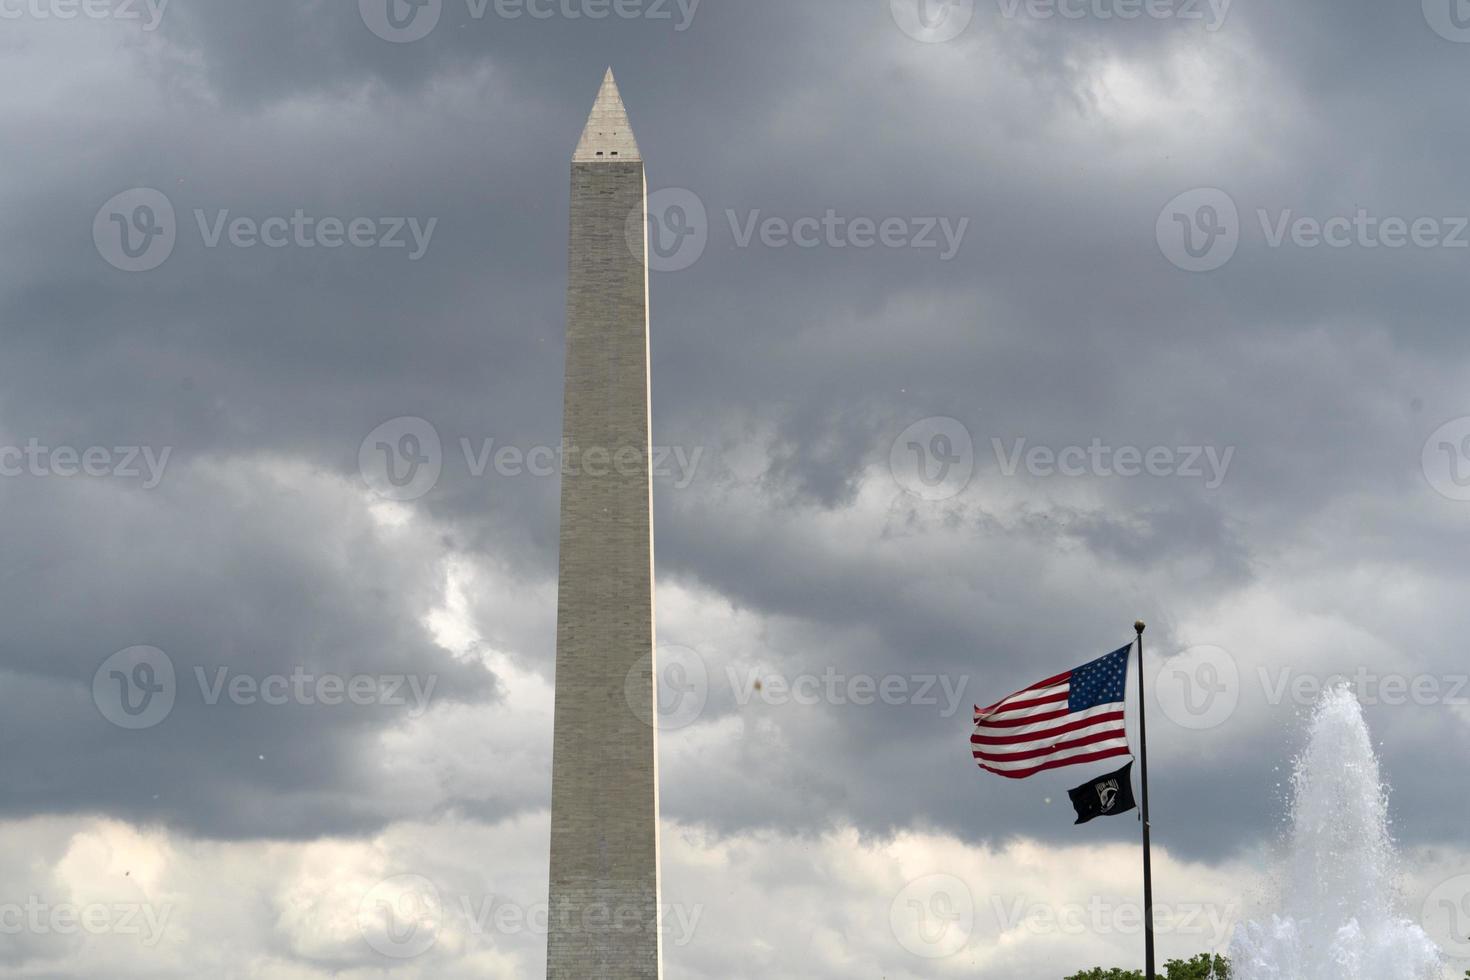 Washington Memorial Obelisk Denkmal in DC foto